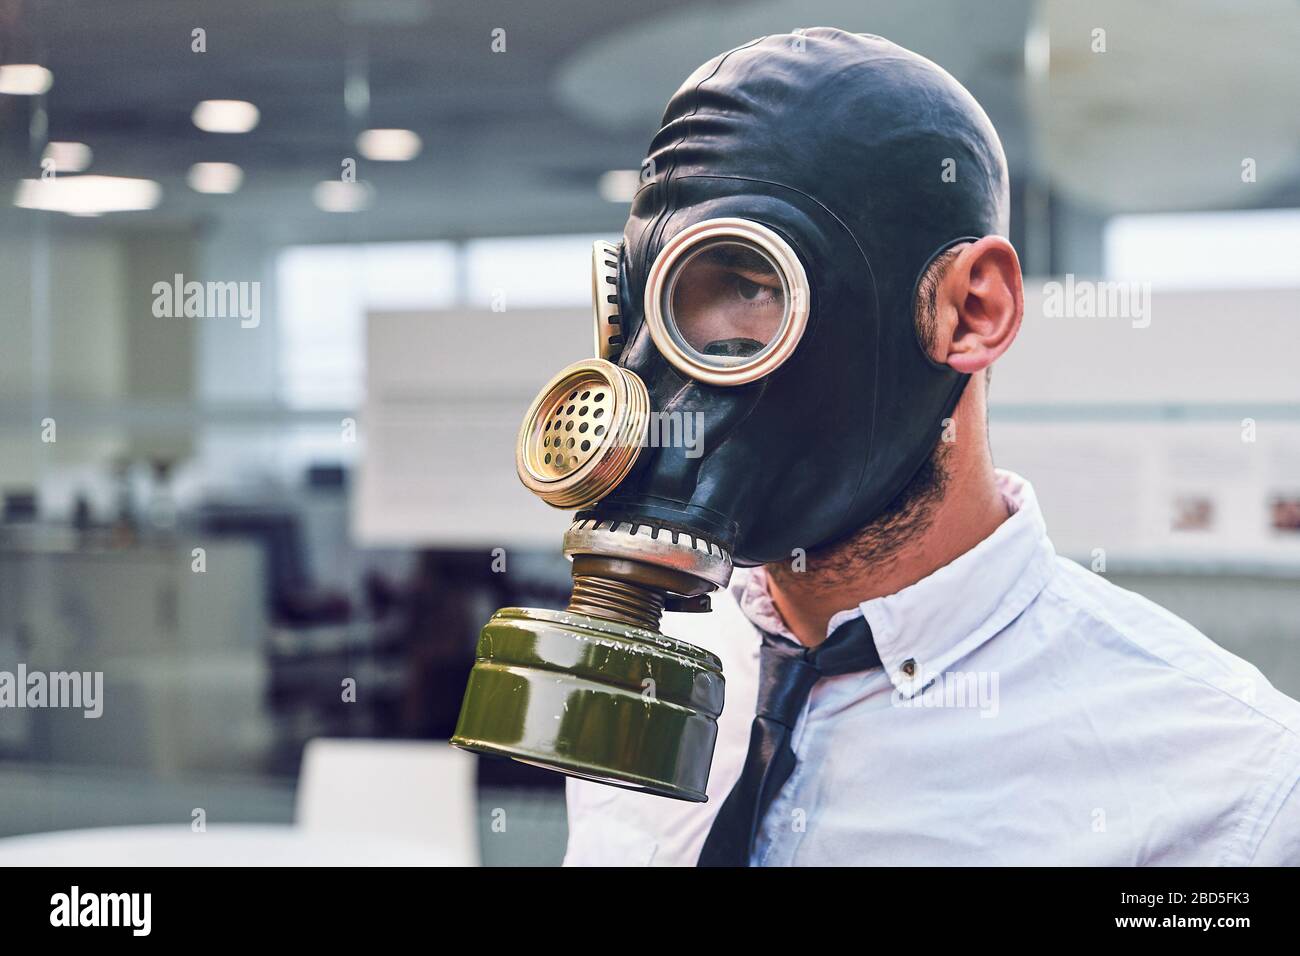 Quarantena del coronavirus. Giovane dipendente in ufficio, al lavoro con maschera a pieno facciale. Protezione dalle infezioni. Foto Stock